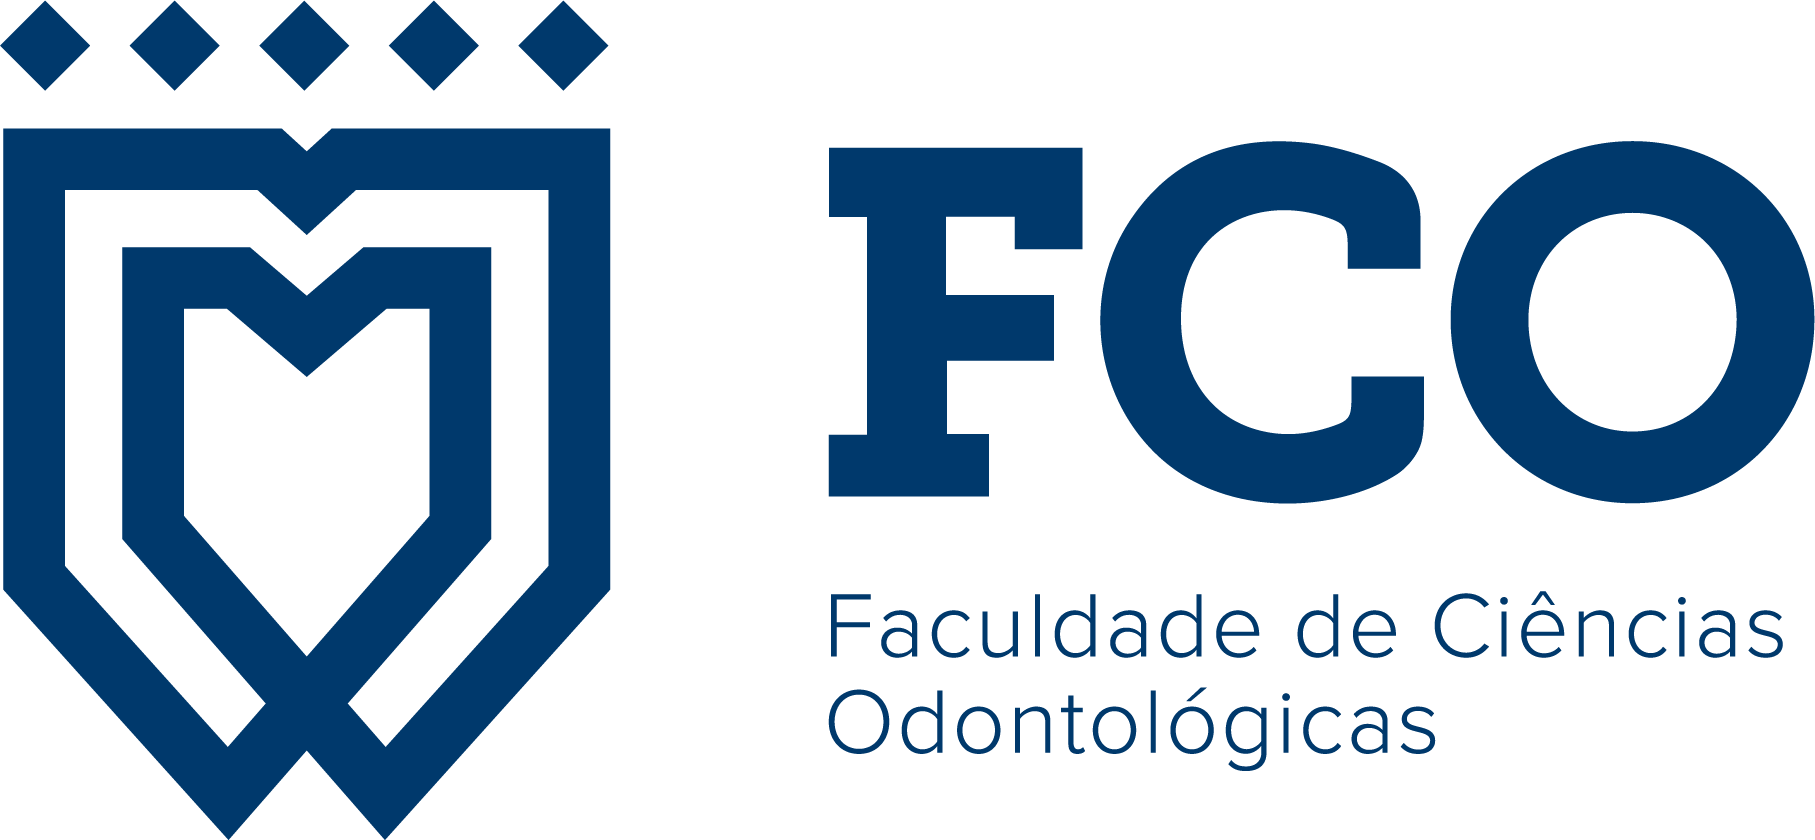 FCO - Faculdade de Ciências Odontológicas